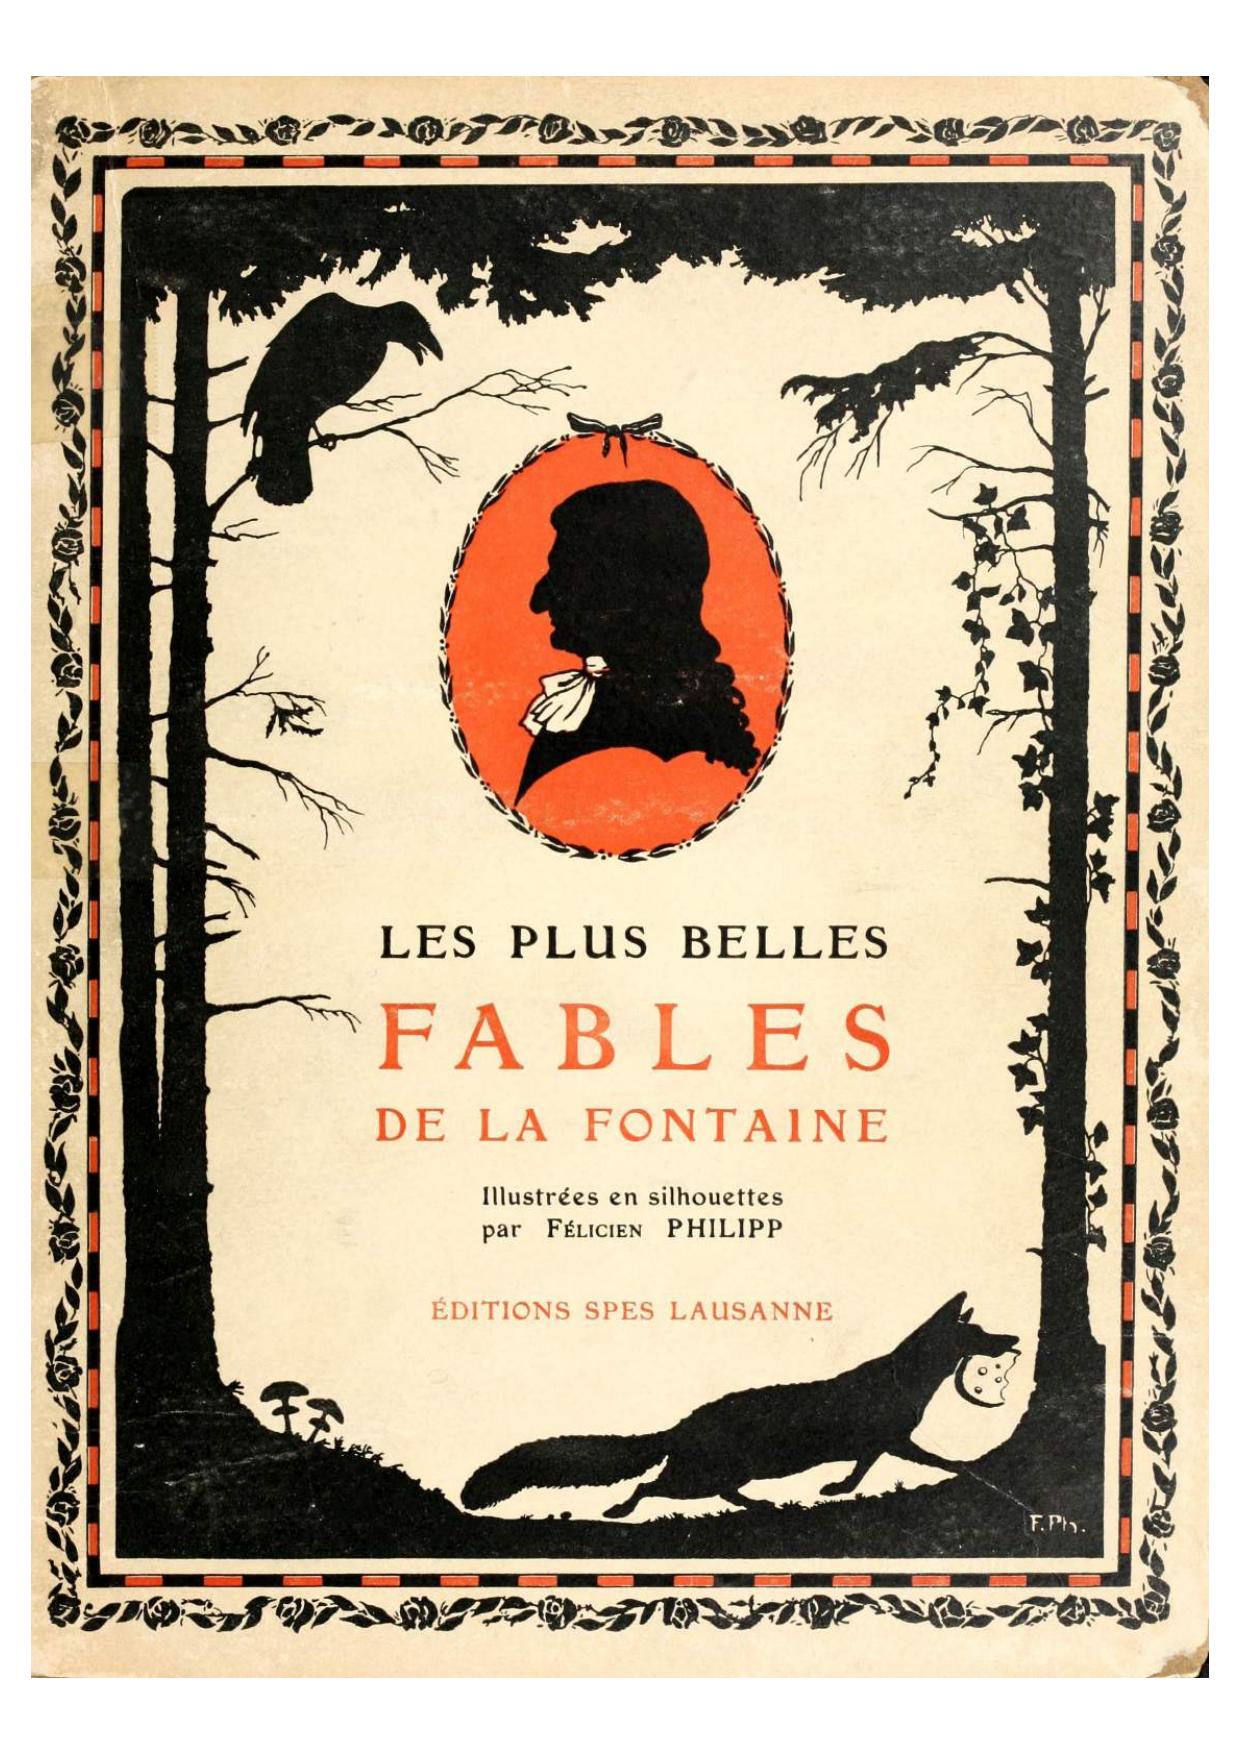 Les plus belles fables de La Fontaine illustrées en silhouettes par Félicien Philipp